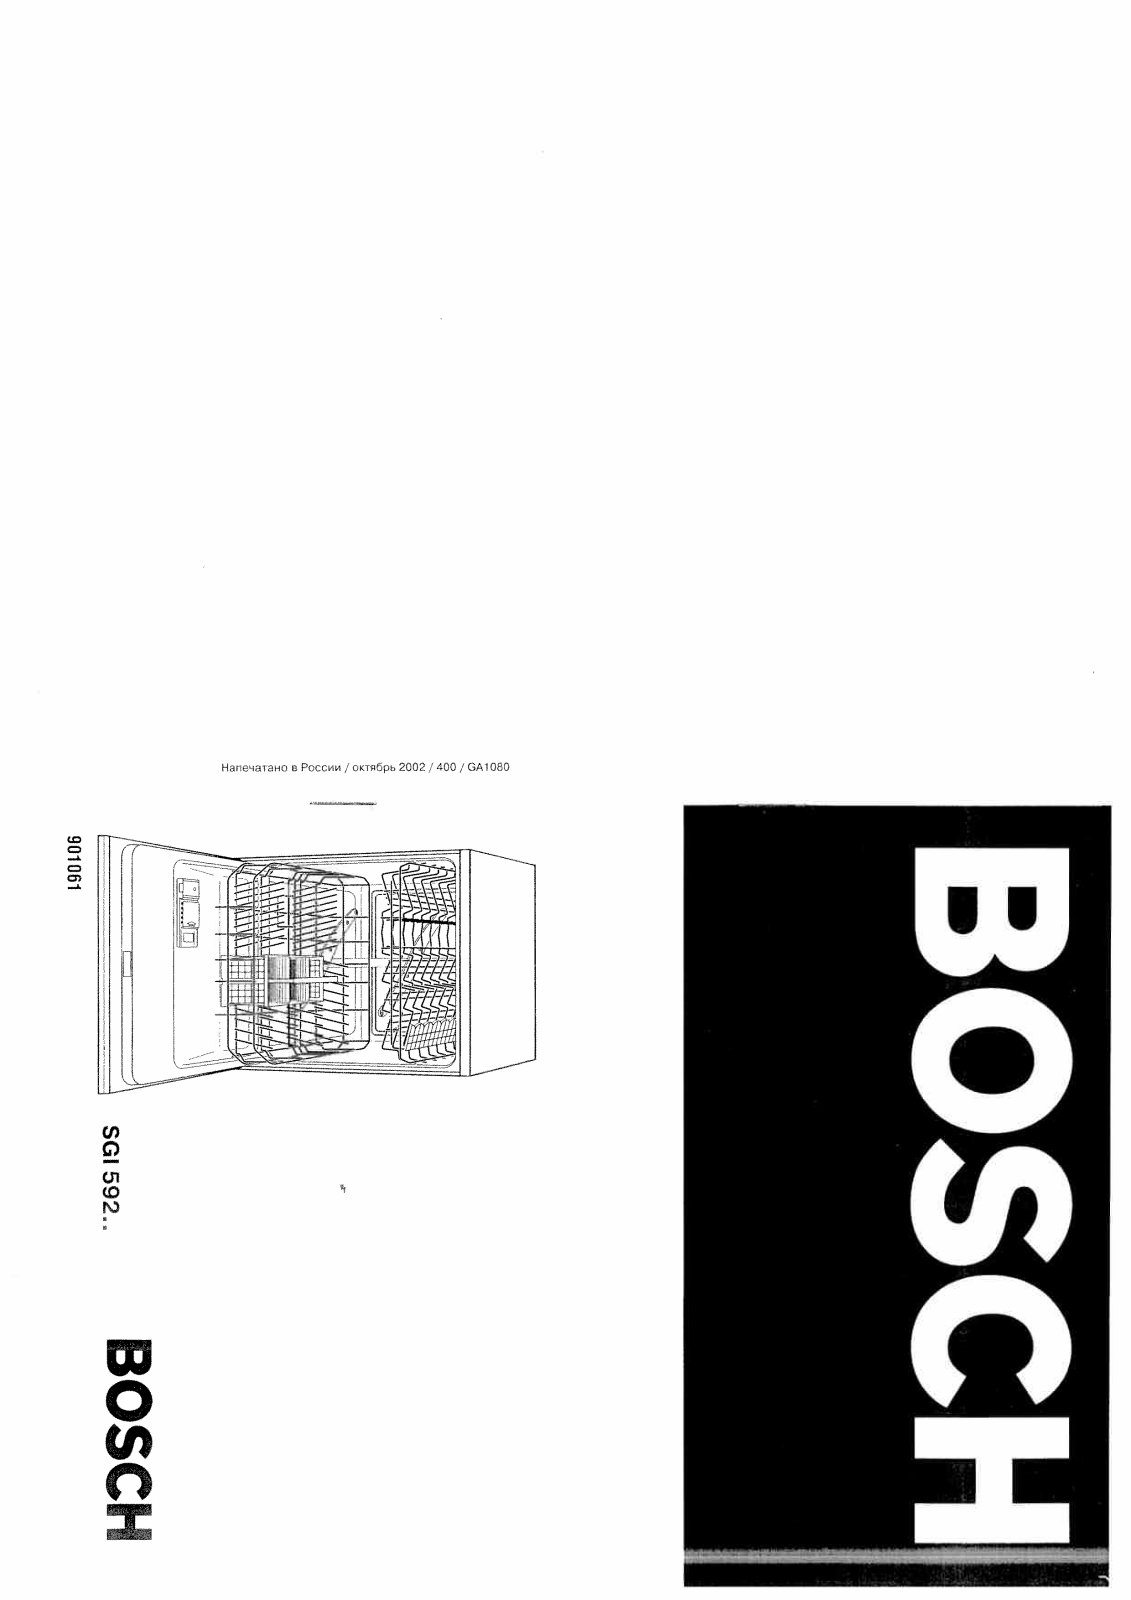 Bosch SGI 5922, SGI 5926, SGI 5925 User Manual